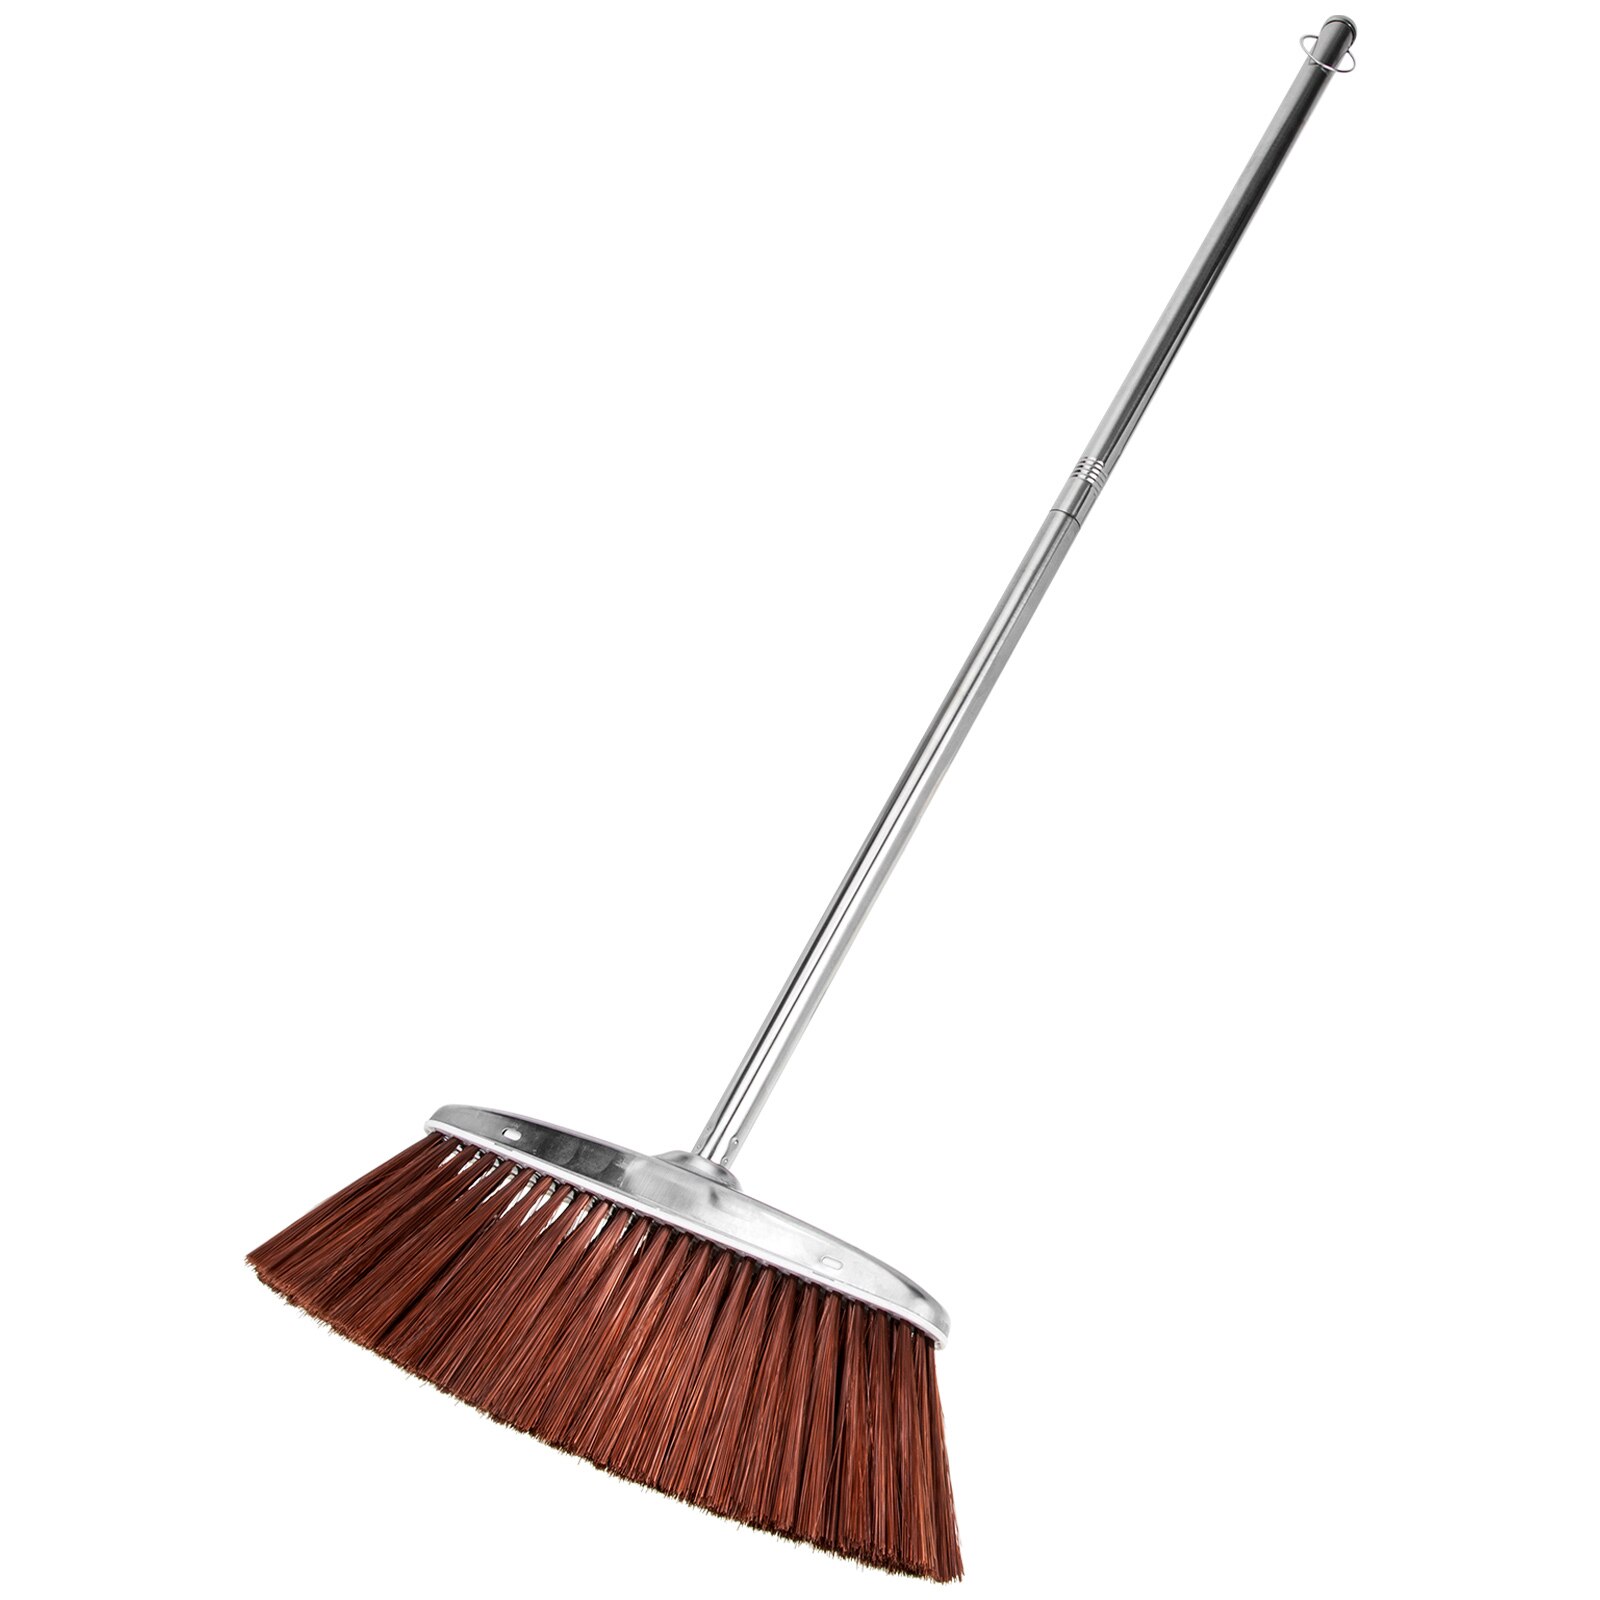 Concrete Broom Grout Clean Brush Metal Handle Broom Outdoor Brooms Stainless Steel Sweeper Room Cleaning Broom Heavy Duty Broom